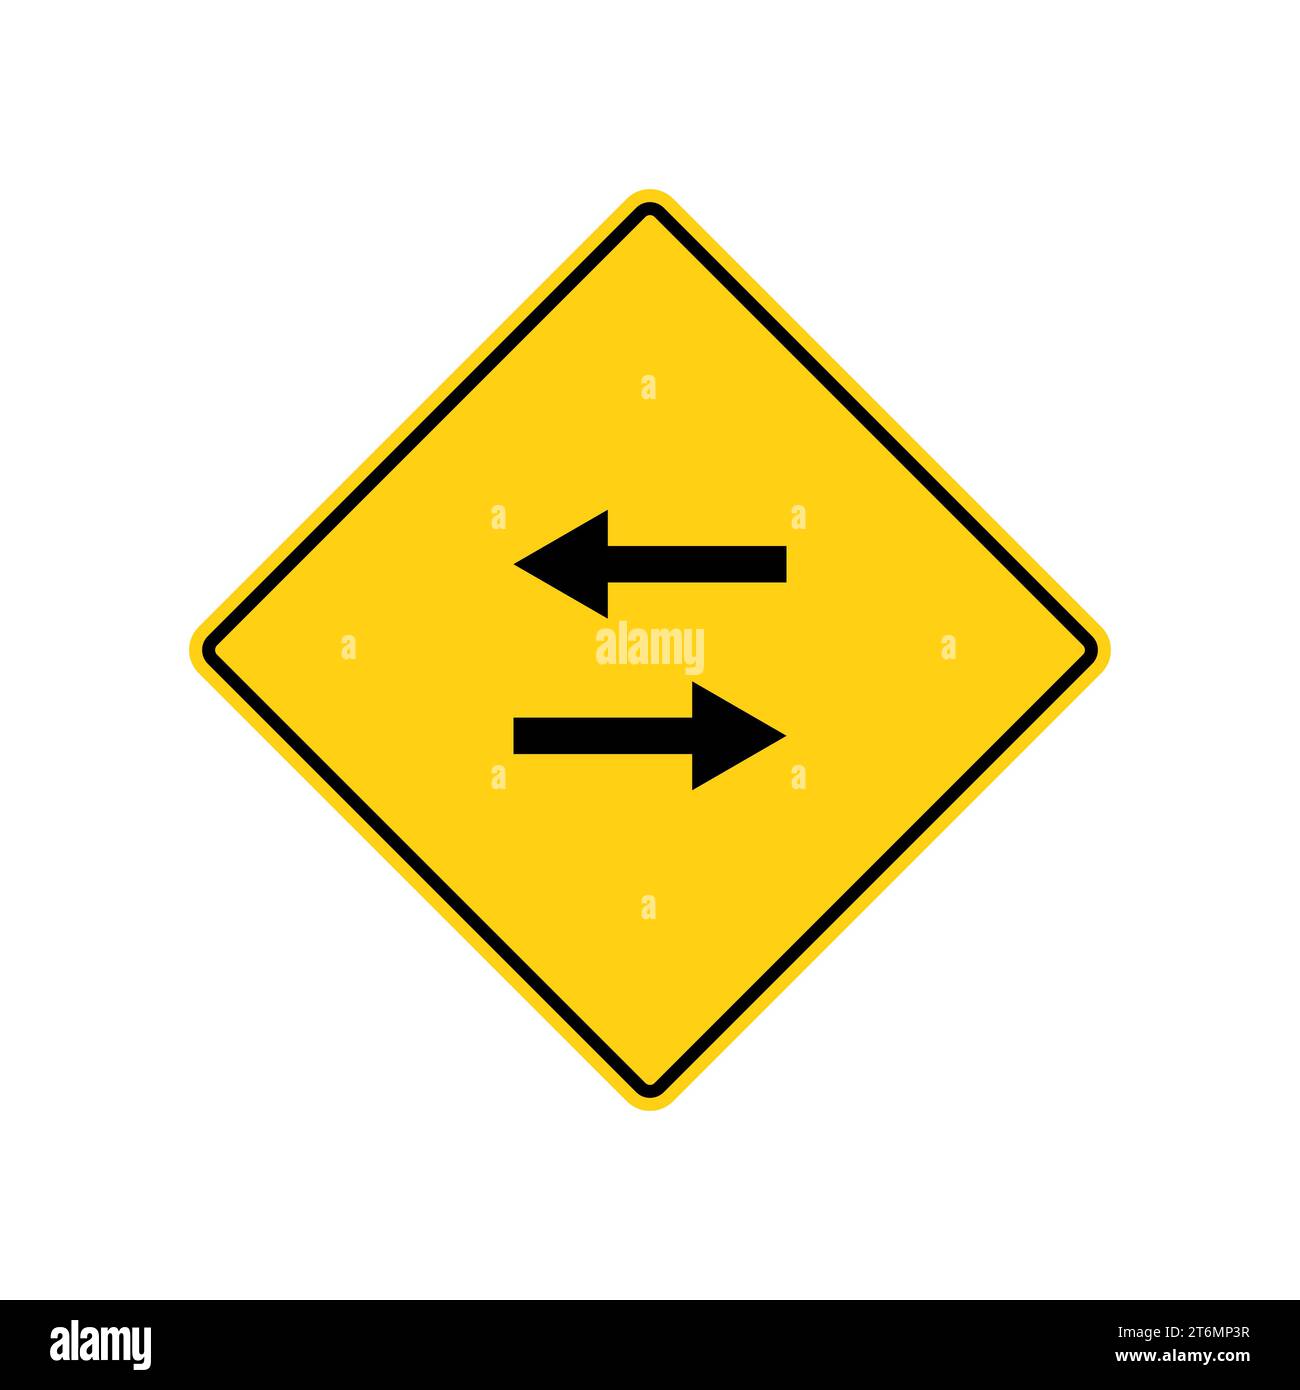 Señal de carretera amarilla: Señal de flecha. Común en señalización de carreteras. Ilustración vectorial sobre fondo blanco. Ilustración del Vector